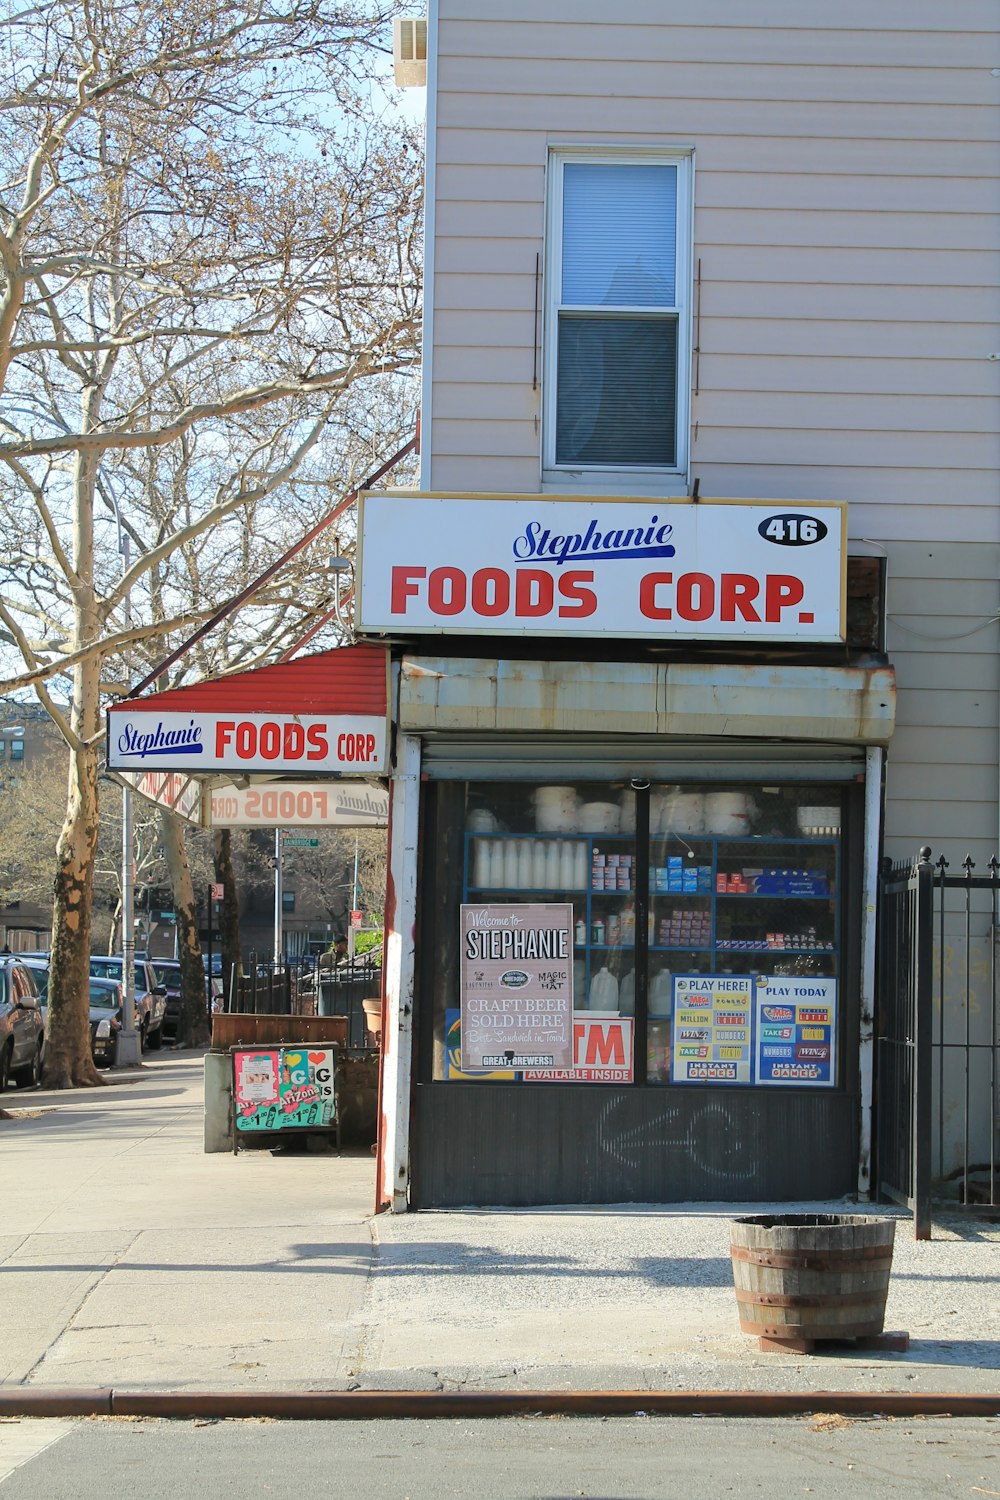 Foods Corp.라고 적힌 간판이 있는 매장 앞